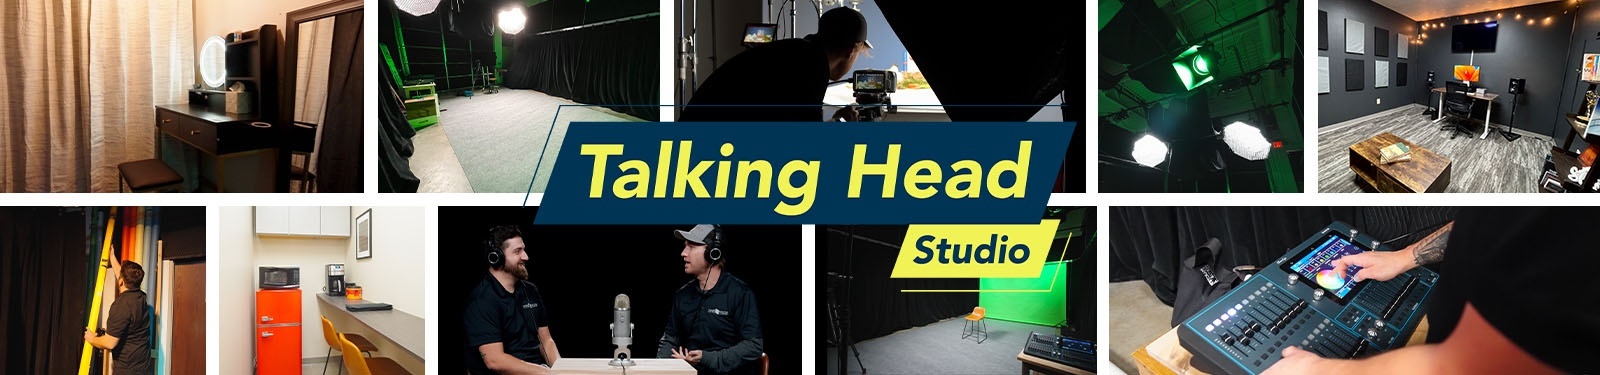 Talking Head Studio